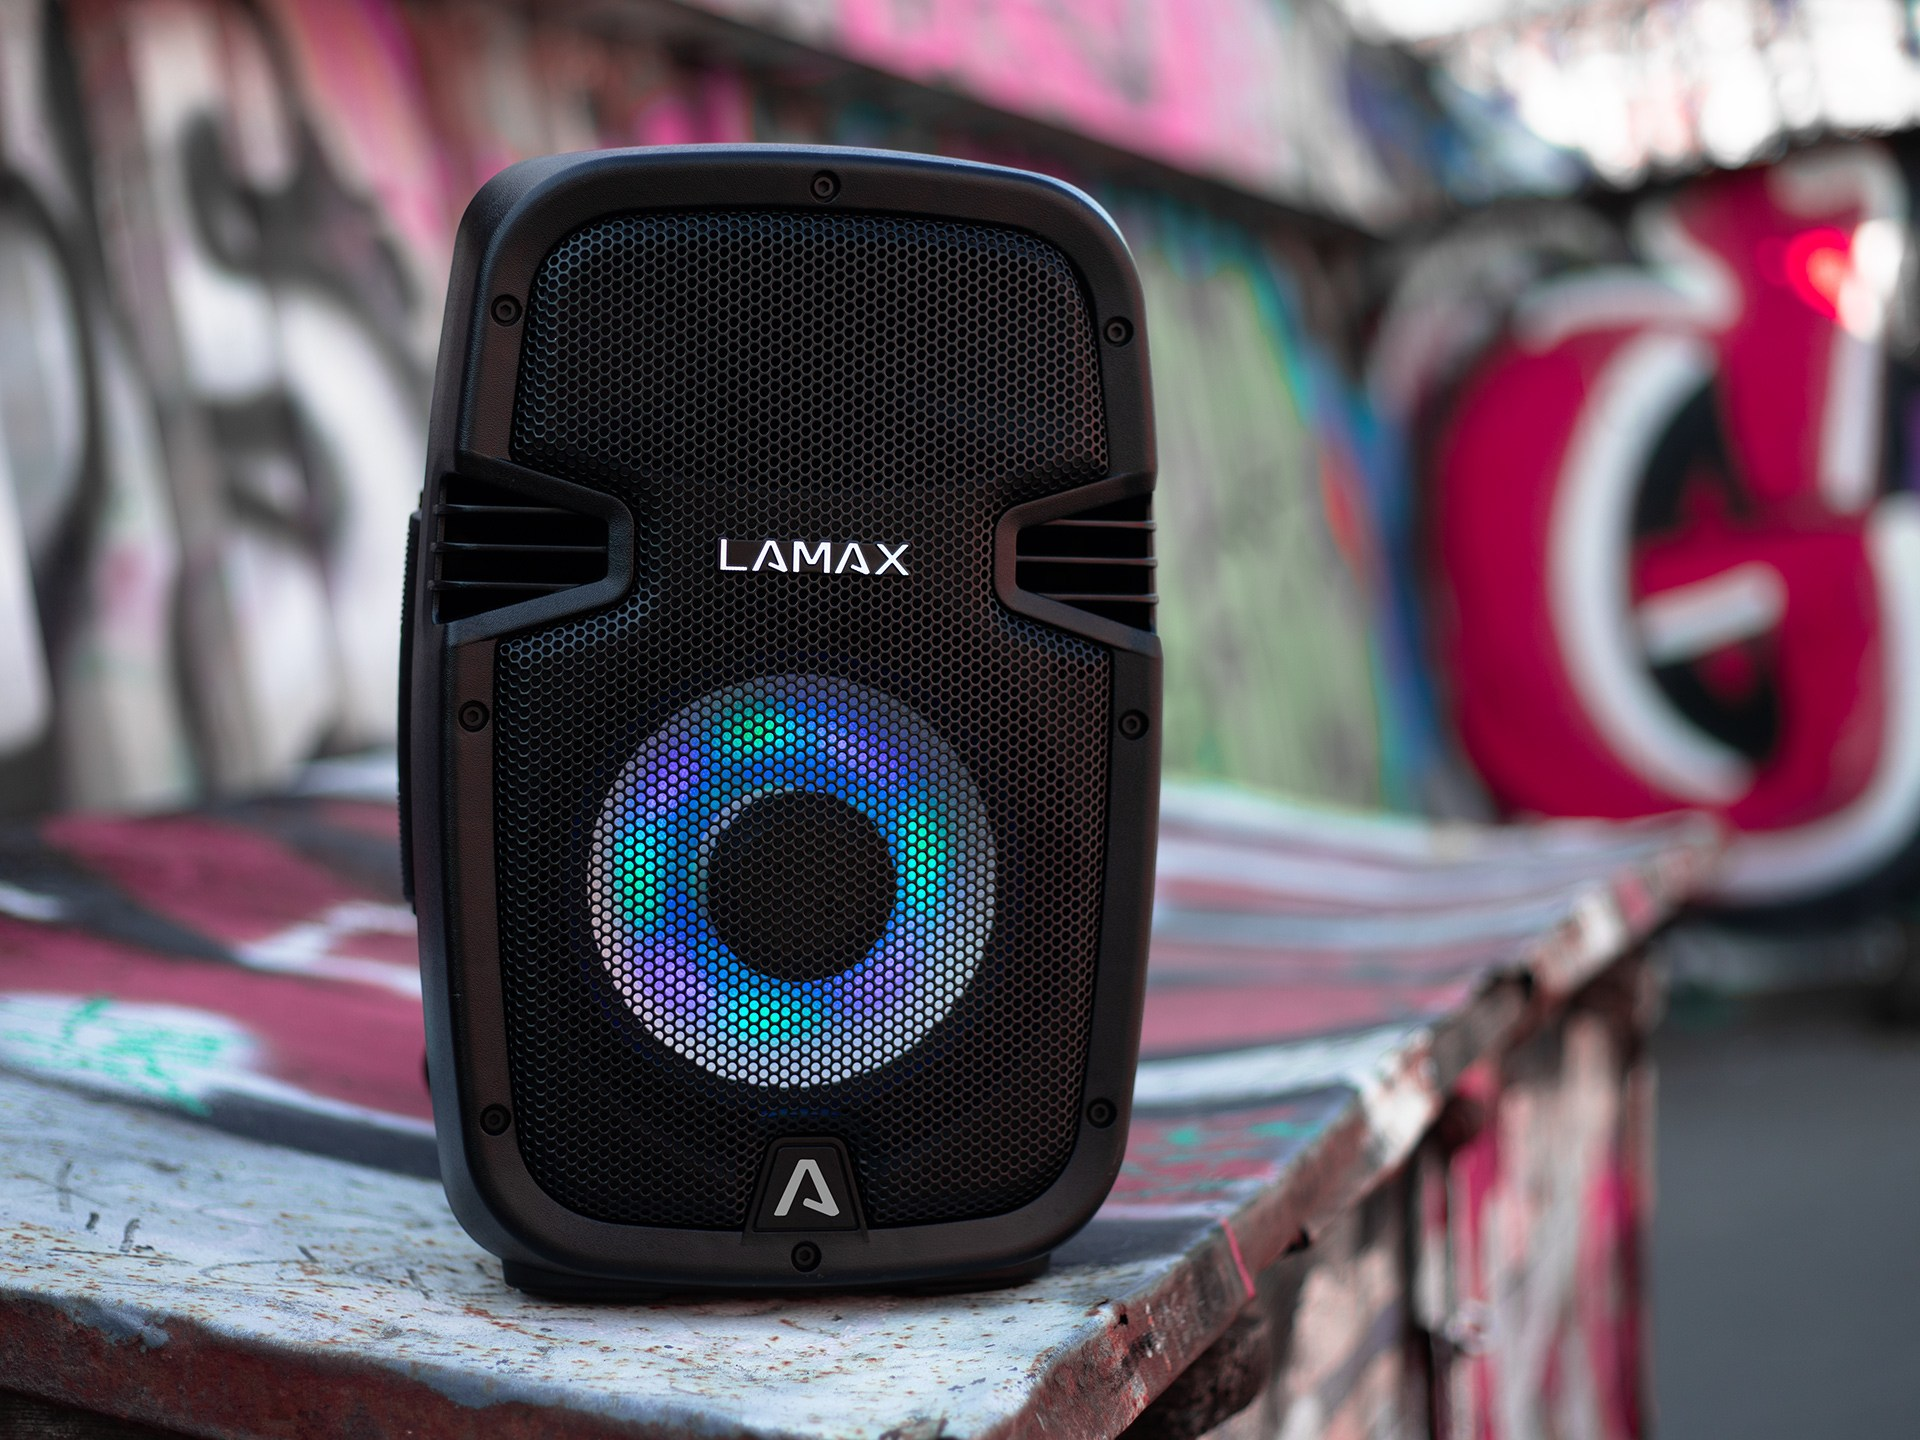 LAMAX schwarz Bluetooth-Lautsprecher, PartyBoomBox300